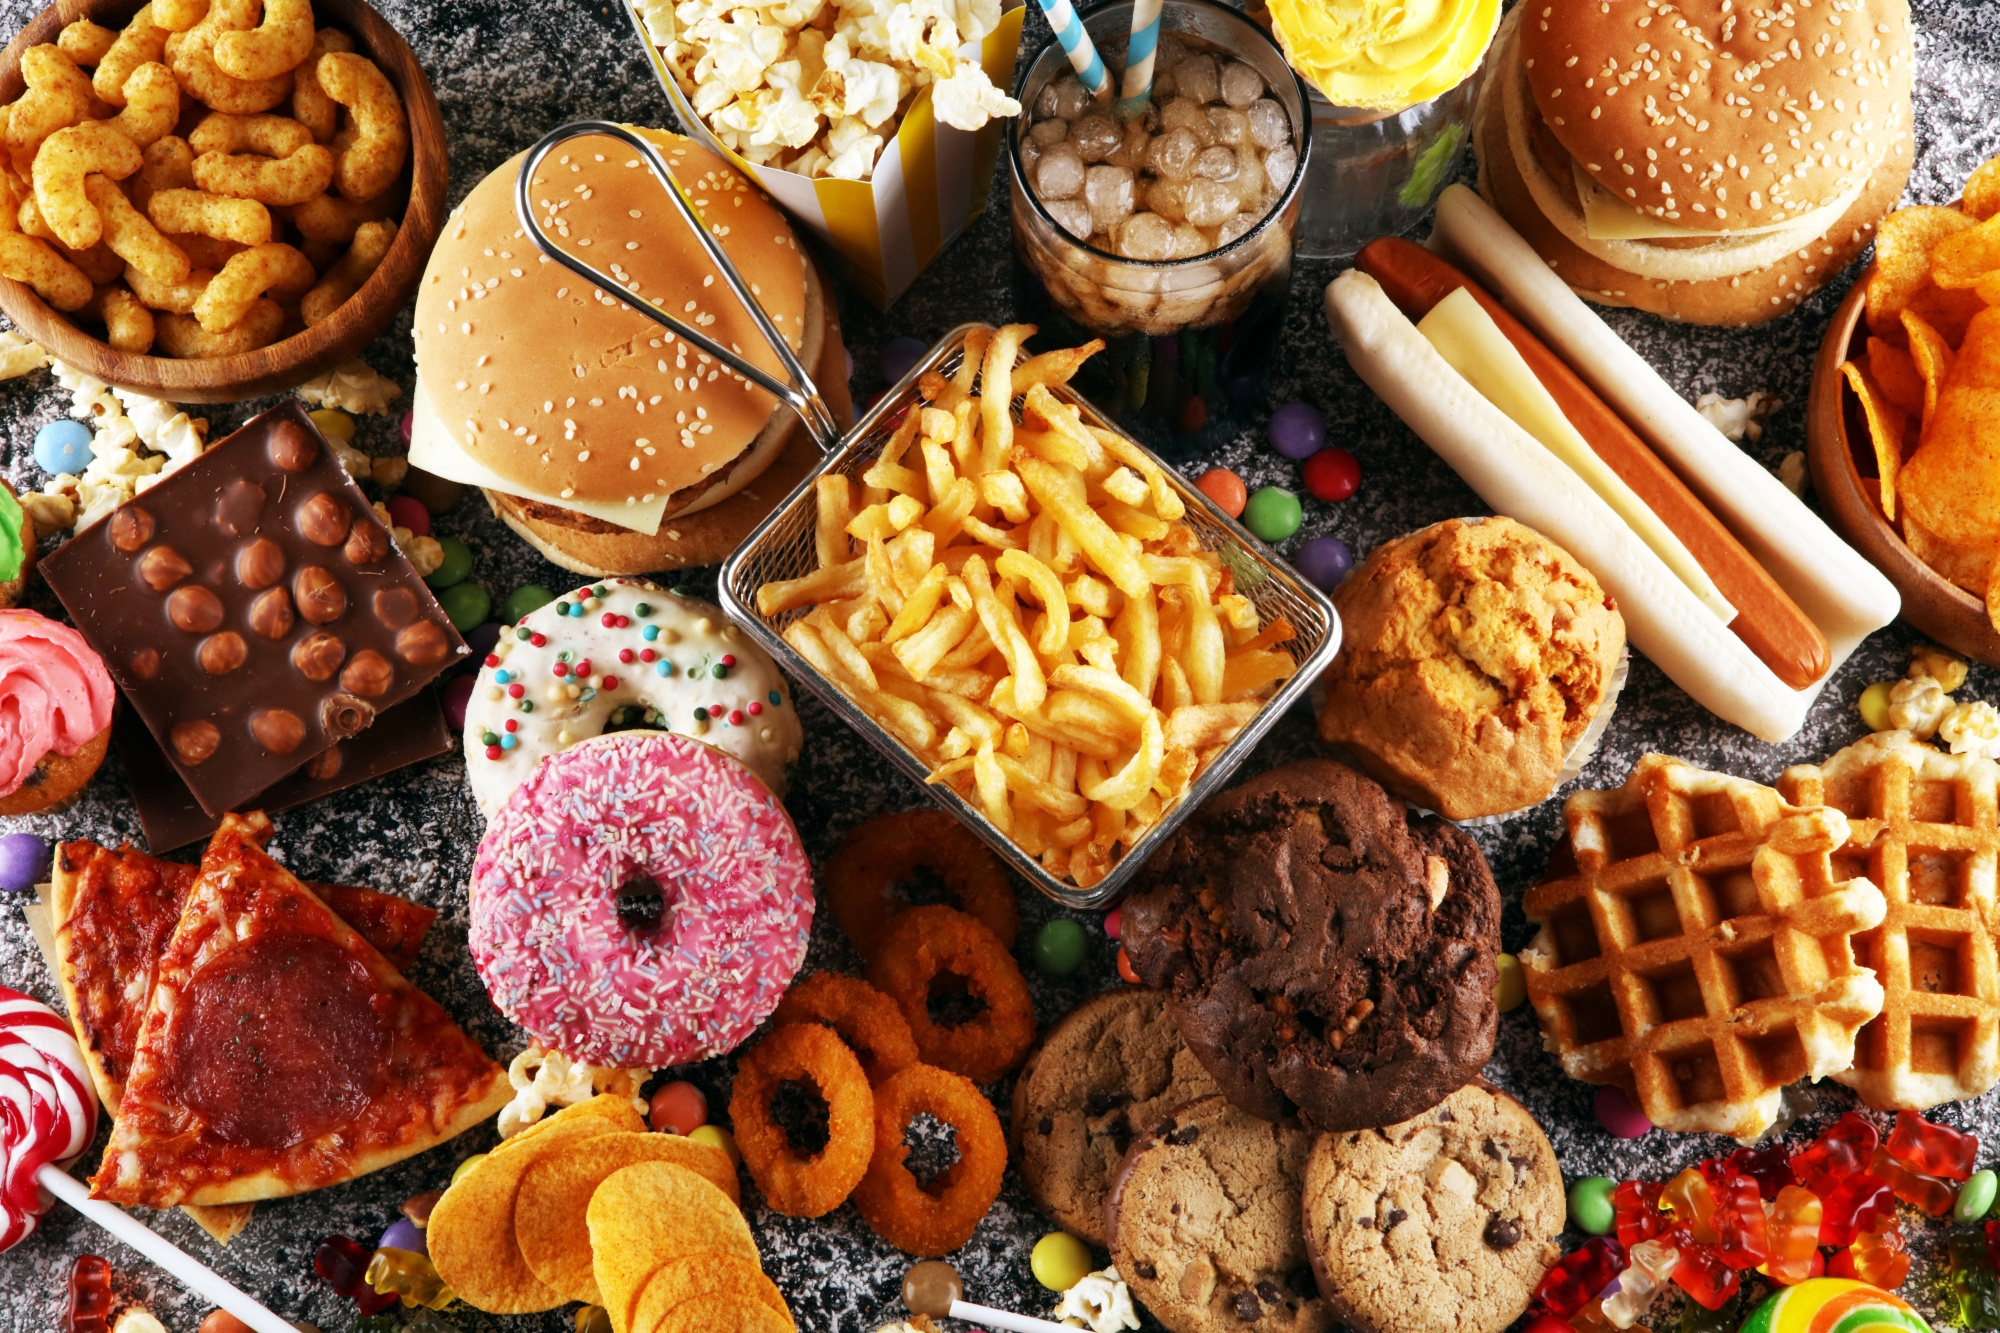 La consommation de sucre et de gras, spécialement les graisses animales, provoque le diabète.